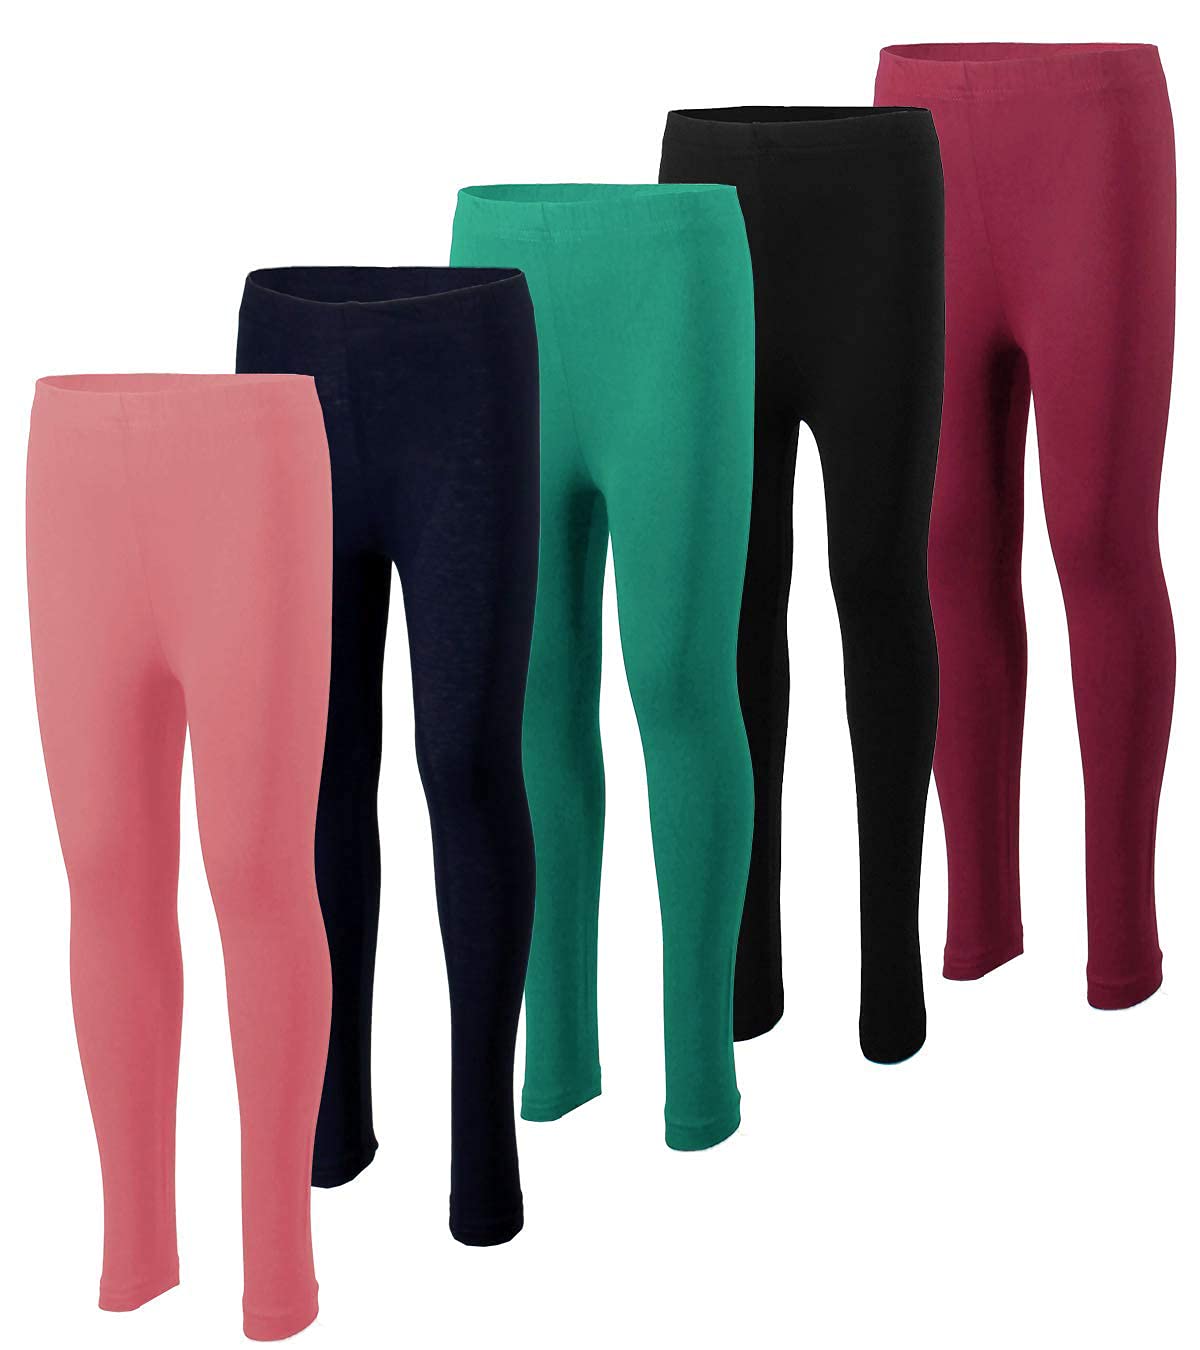  MISS POPULAR 5-Pack Girls Leggings Sizes 4-16 Soft